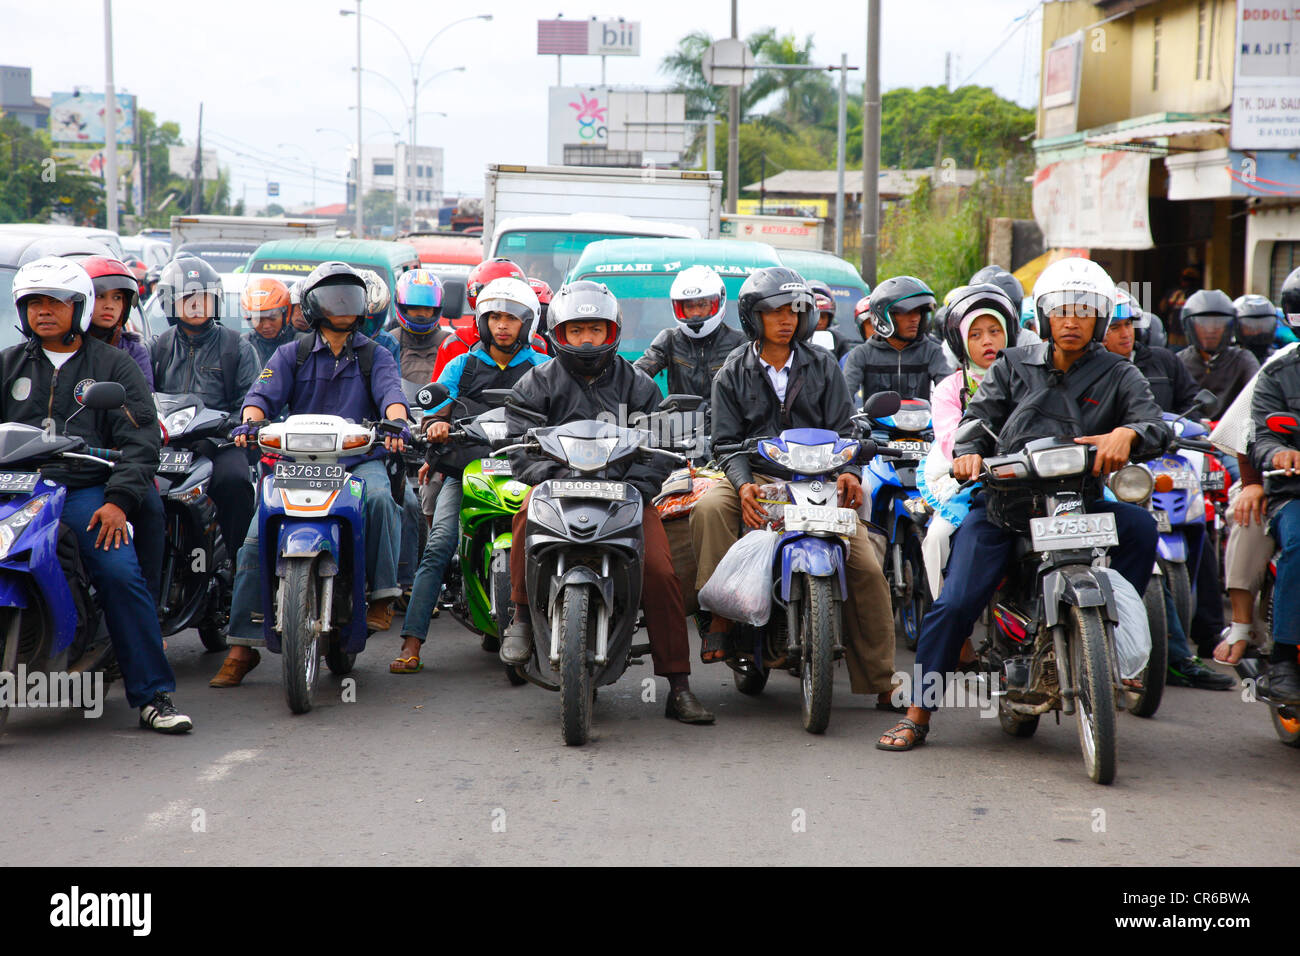 Motociclisti, scene di strada, Bandung, Java, Indonesia, sud-est asiatico Foto Stock